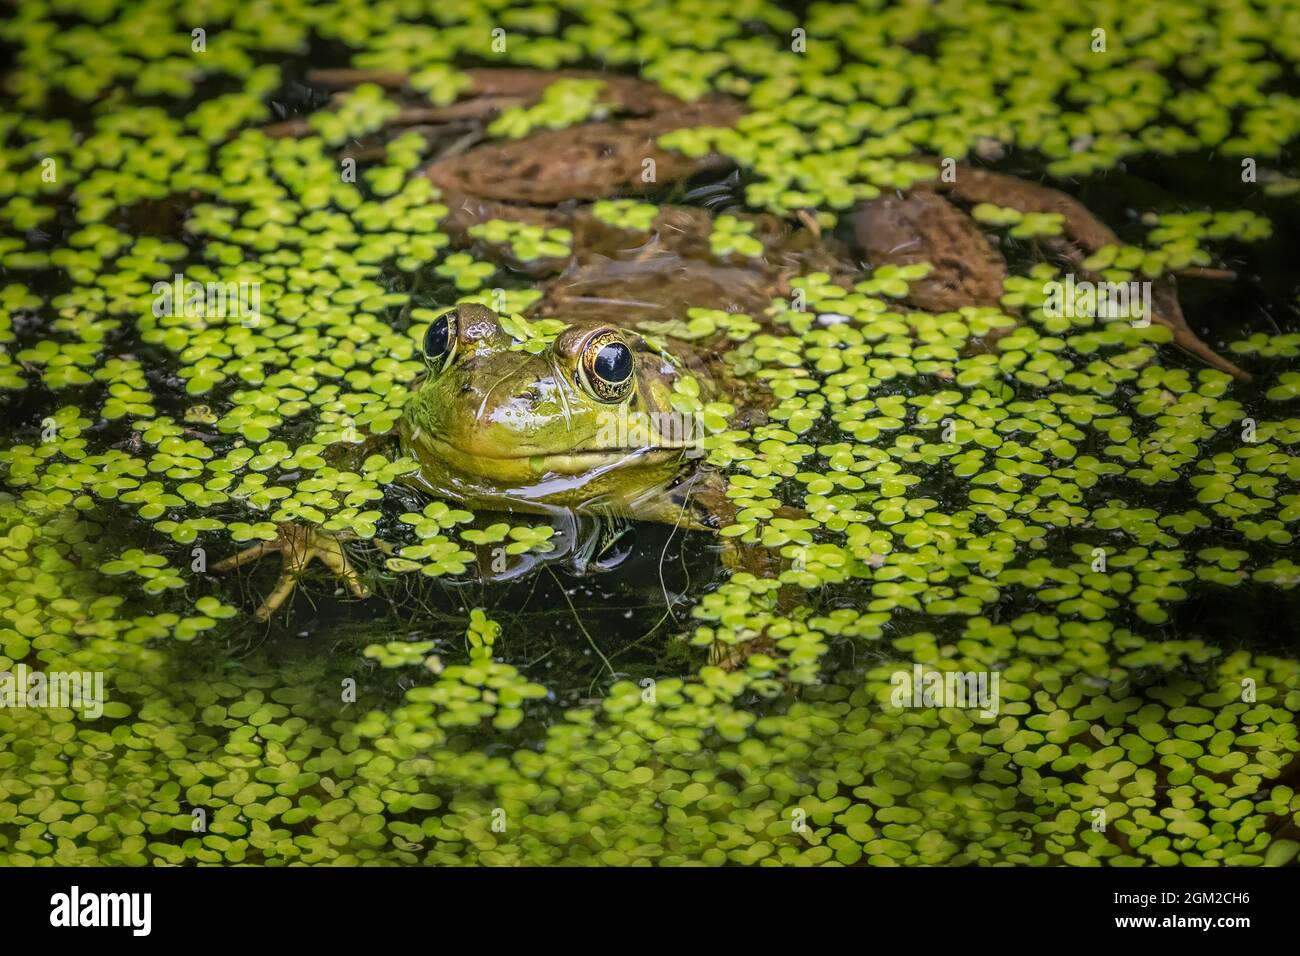 American Bull Frog Peeking fuori surroed da galleggianti Duckweeds in un laghetto. Questa immagine è disponibile sia a colori che in bianco e nero. Per visualizzare addi Foto Stock